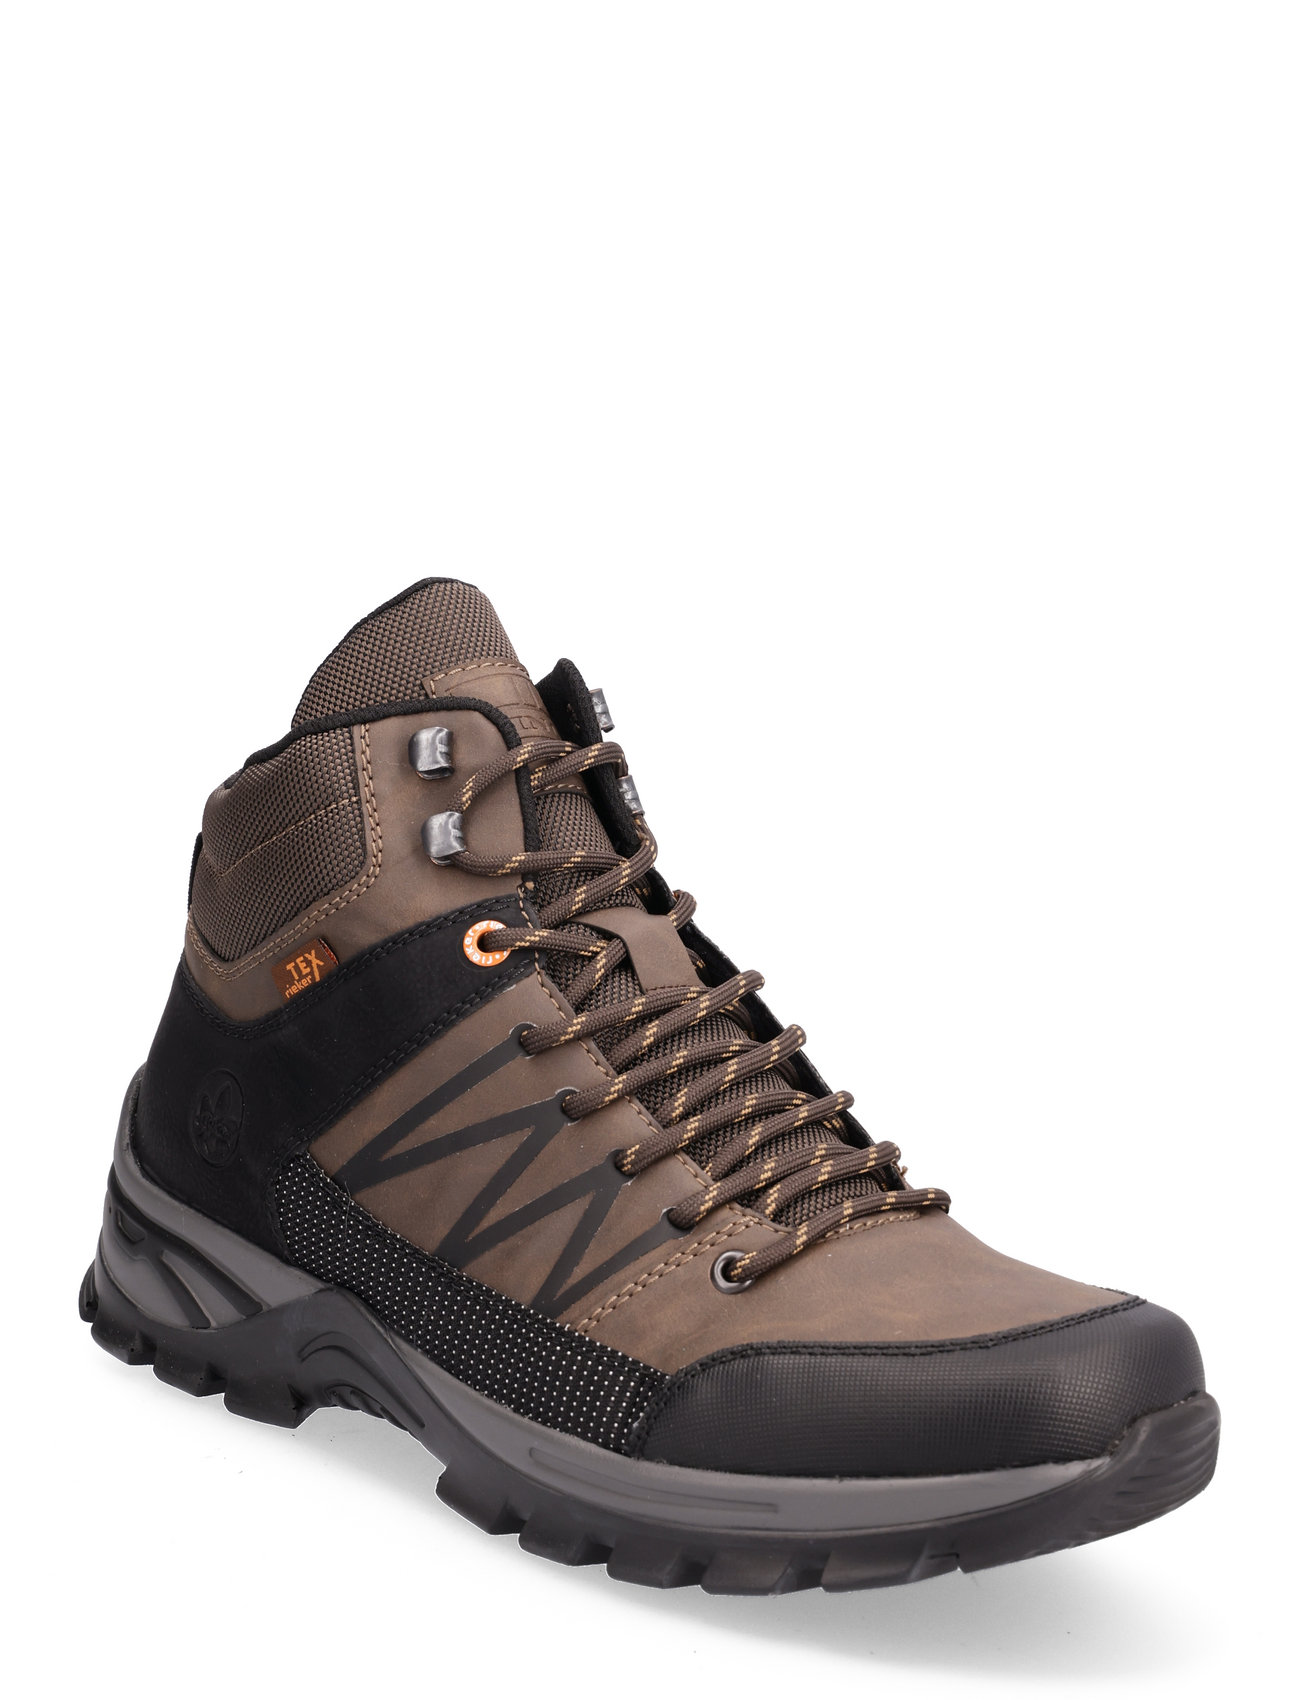 Rieker B6844-25 - Hiking/walking shoes - Boozt.com